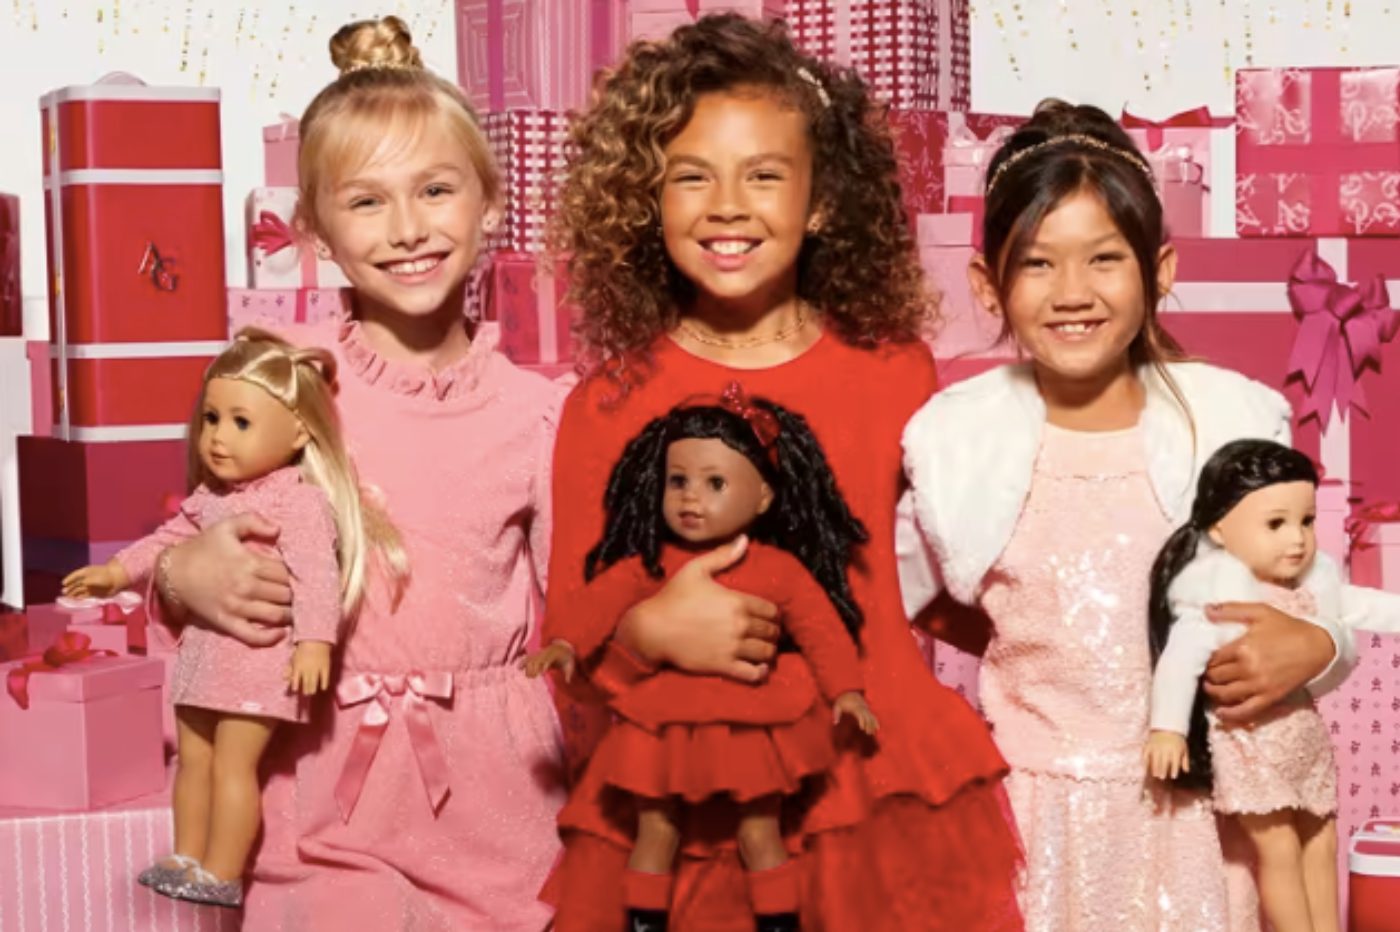 La sensibilisation à la perte d'audition fait une percée alors que Mattel  lance la première poupée American Girl handicapée - El Segundo, CA 90245,  USA